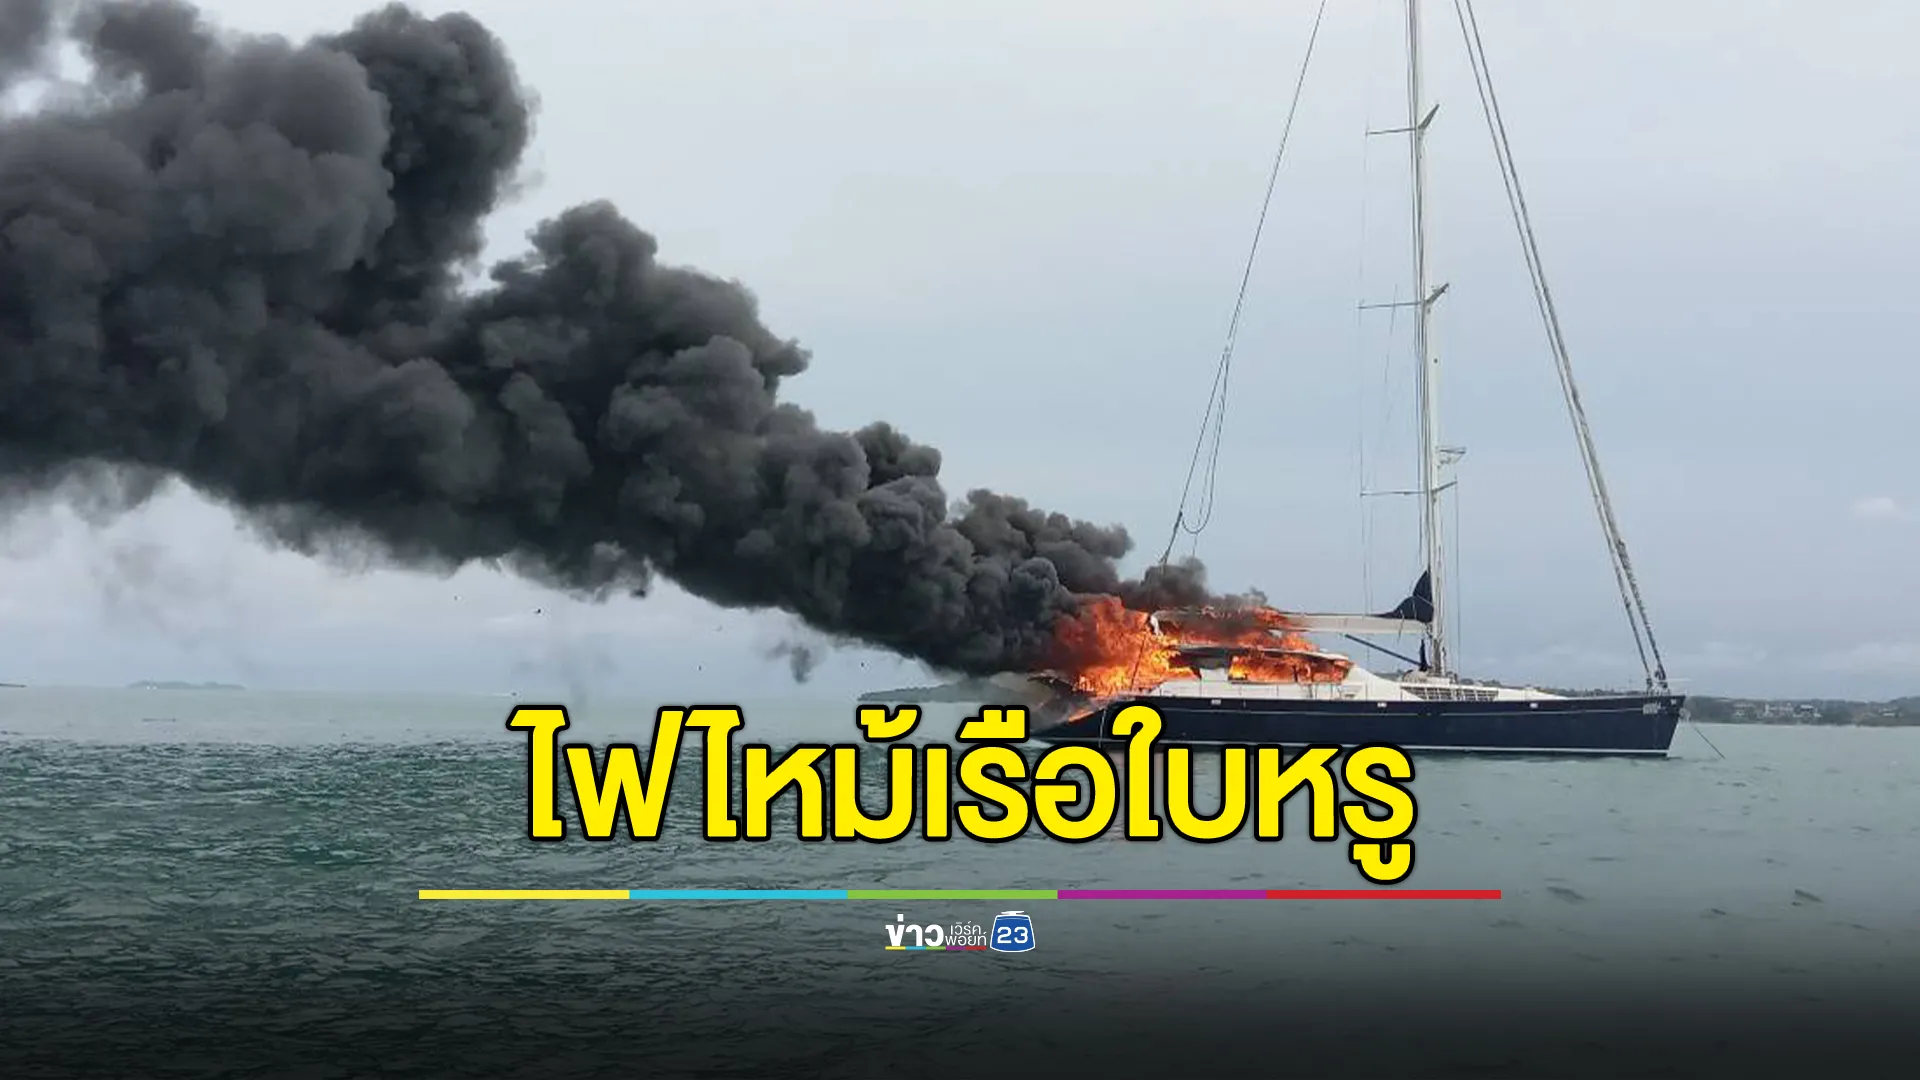 "ไฟไหม้เรือใบหรู"กลางทะเลภูเก็ต ต่างชาติเจ้าของเรือรอด